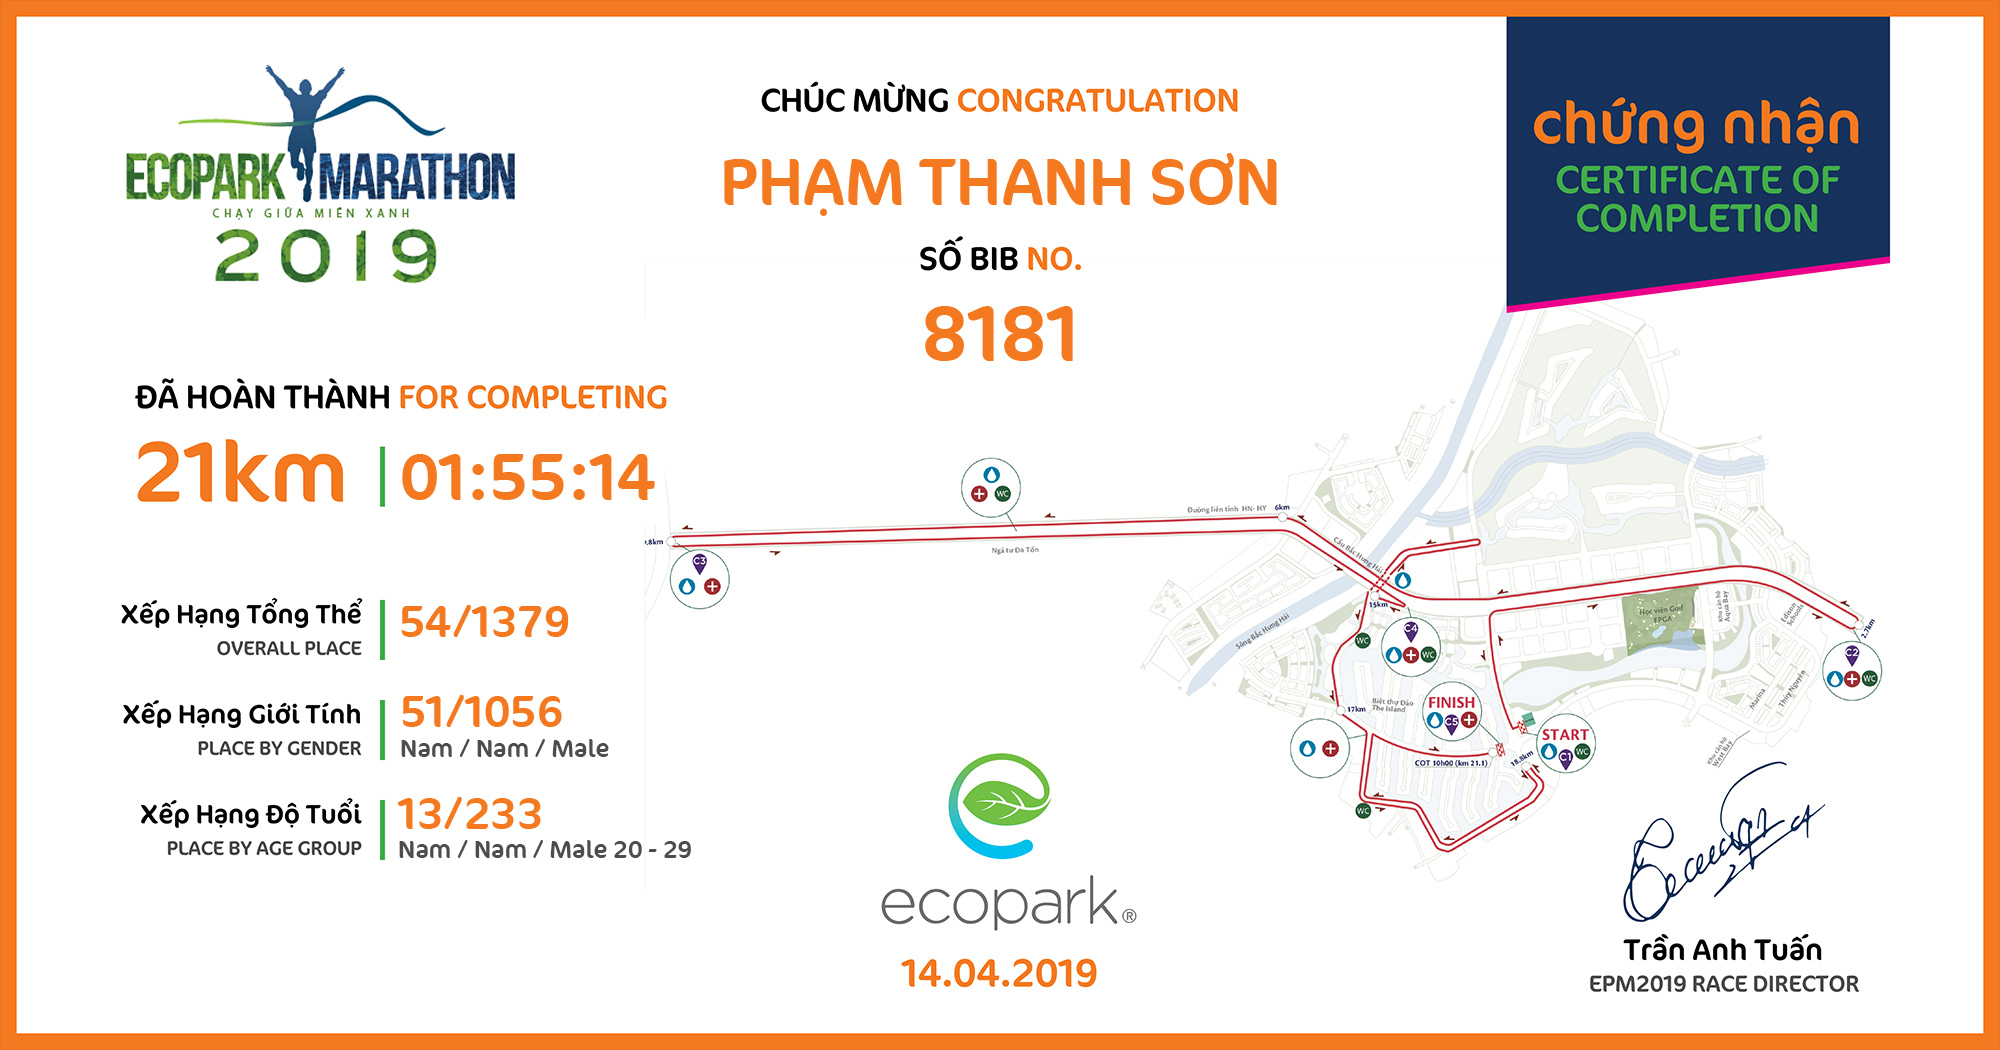 8181 - Phạm Thanh Sơn